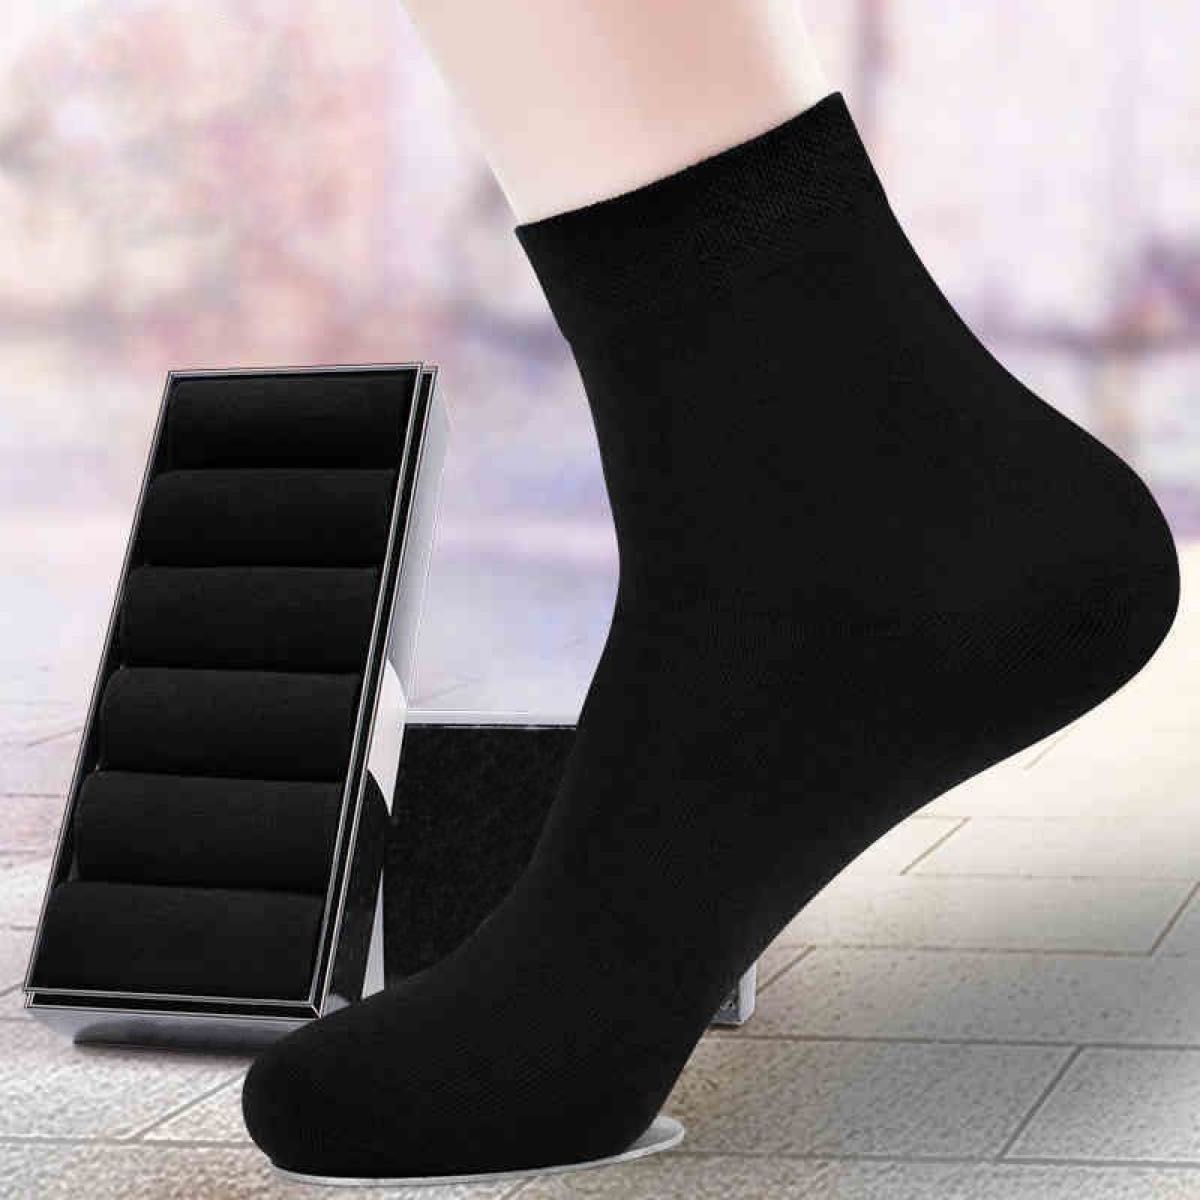 10足 セット ソックス シンプル ブラック 黒 ビジネス 学生 社会人 メンズ レディース 防臭 吸汗 速乾洗い替え 靴下